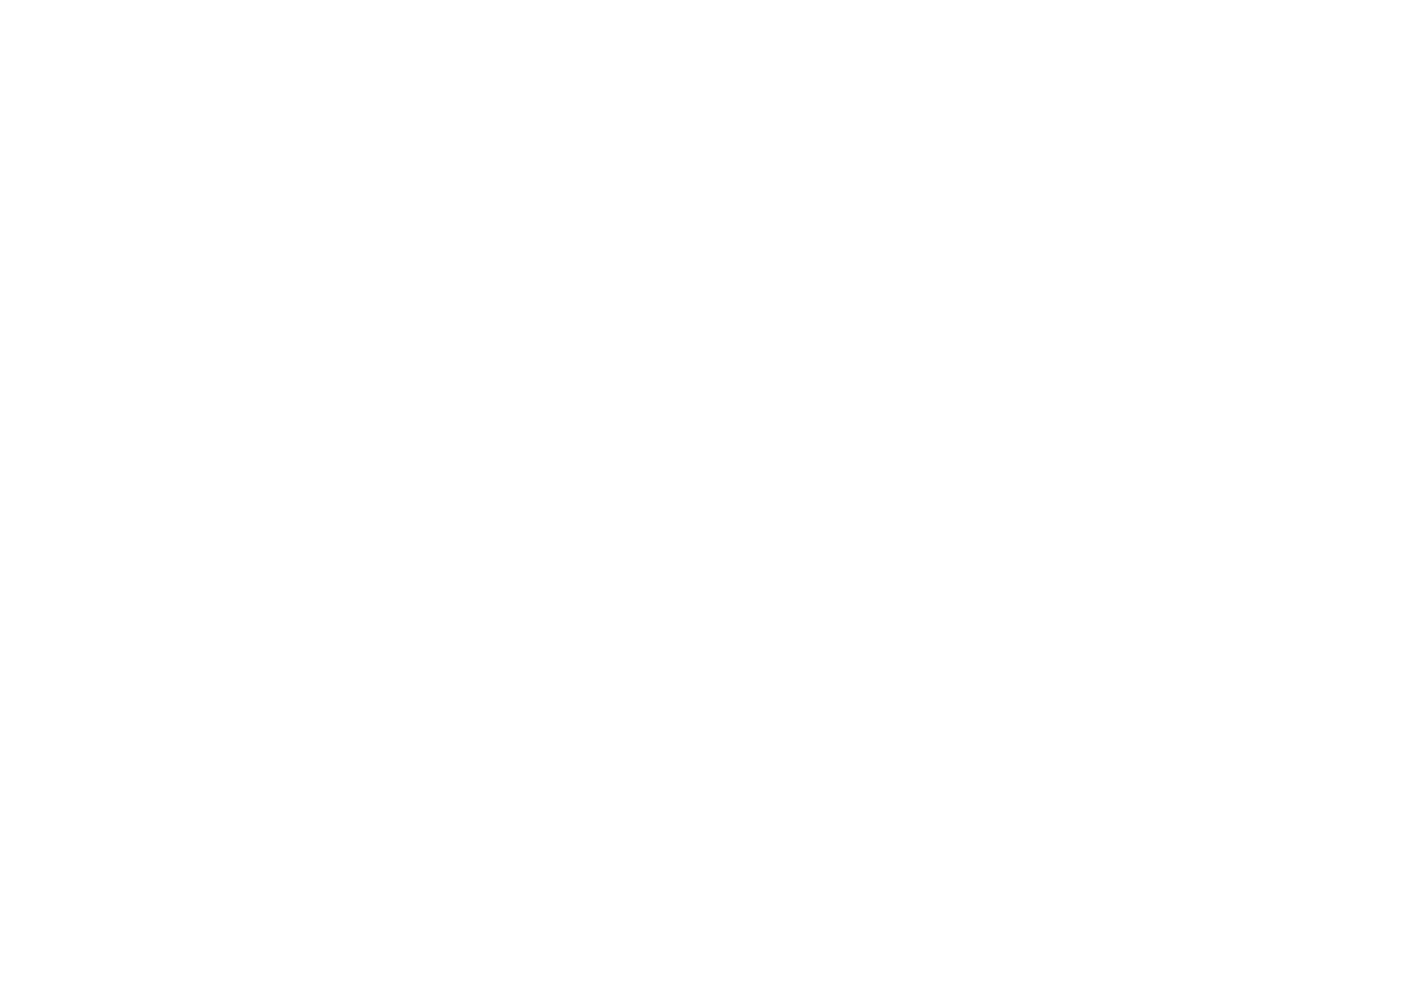 Le logo de l’armée australienne blanc